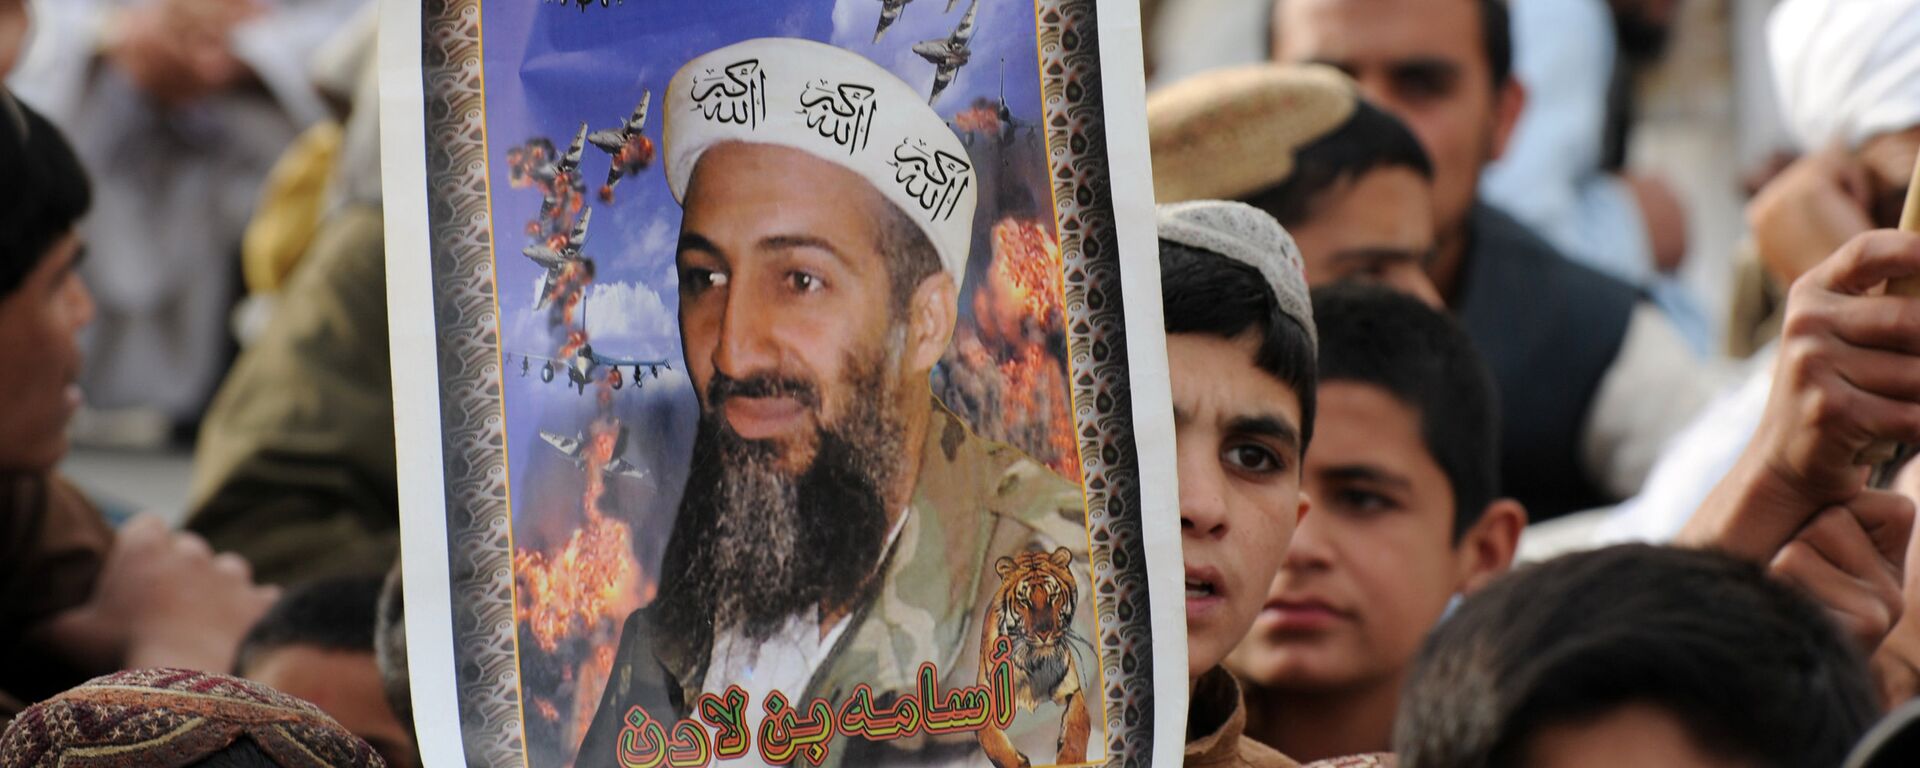 2 Mayıs 2012, Usame bin Ladin'in öldürülmesinin 1. yıldönümü, Pakistan, Keta, Taliban yanlısı parti JUI-N gösterisi - Sputnik Türkiye, 1920, 31.08.2021